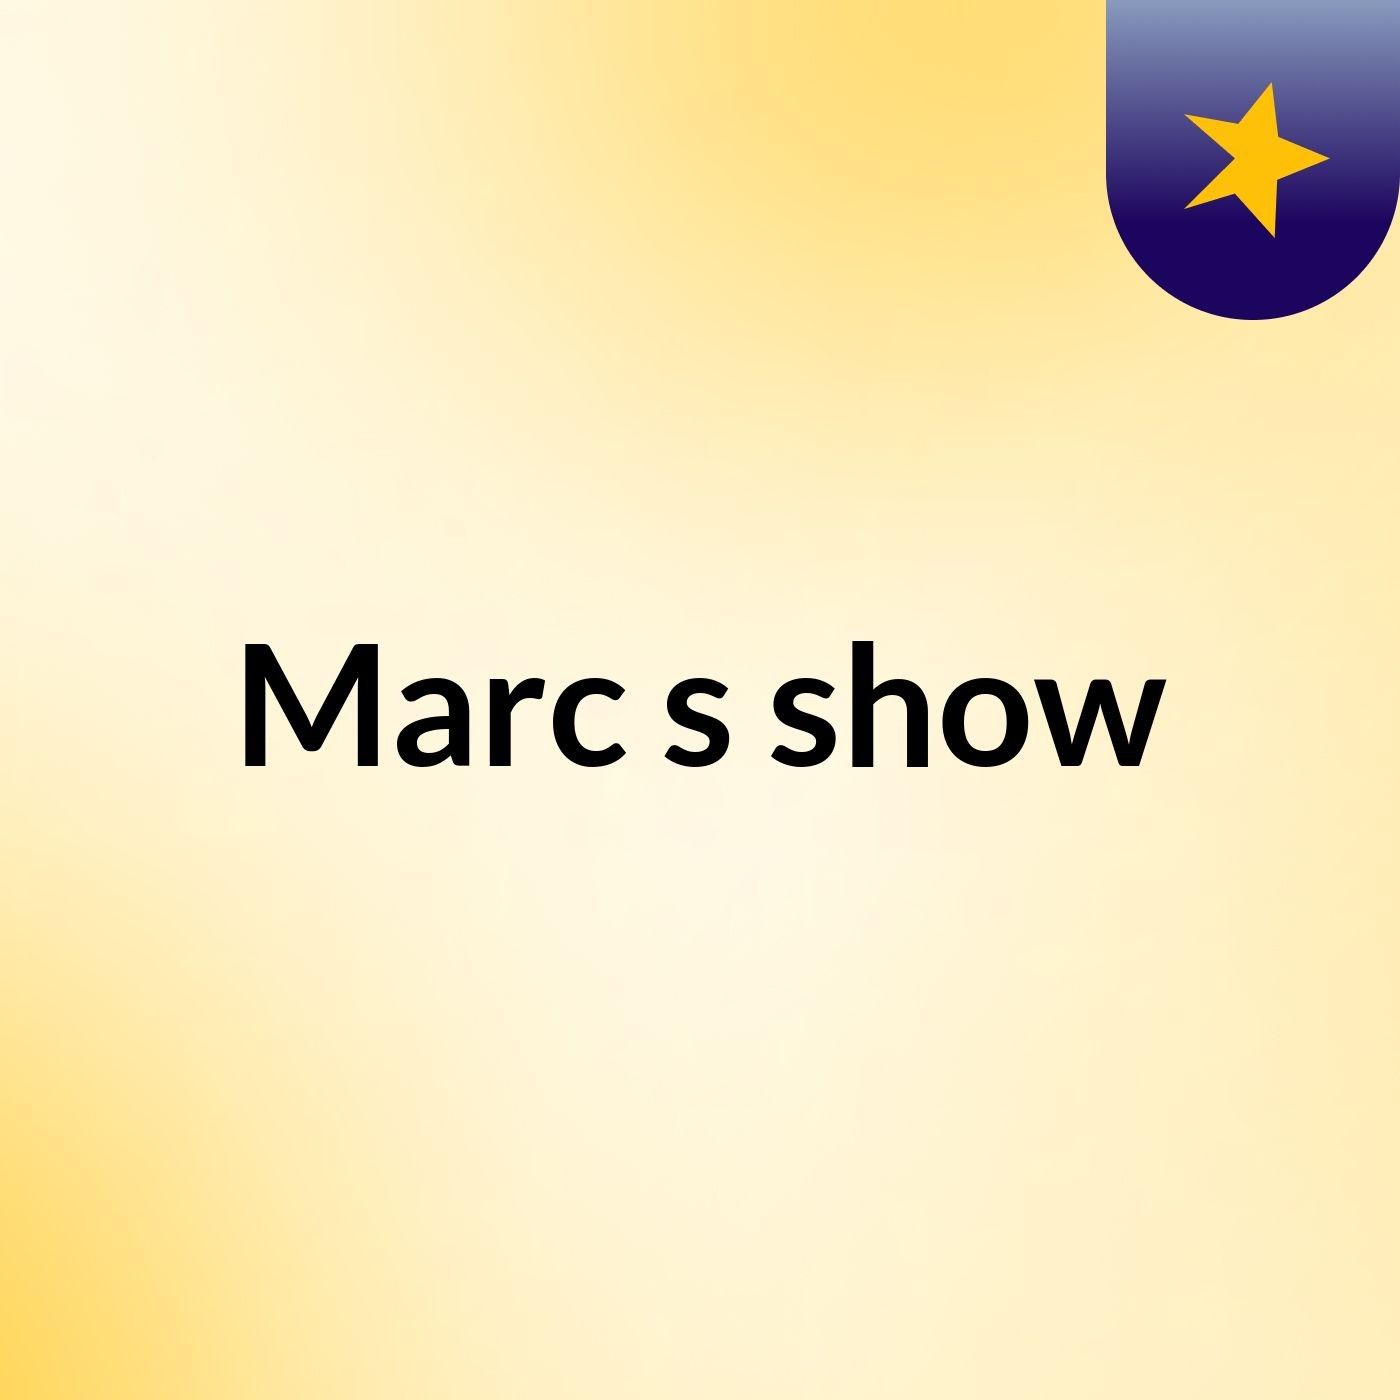 Marc's show